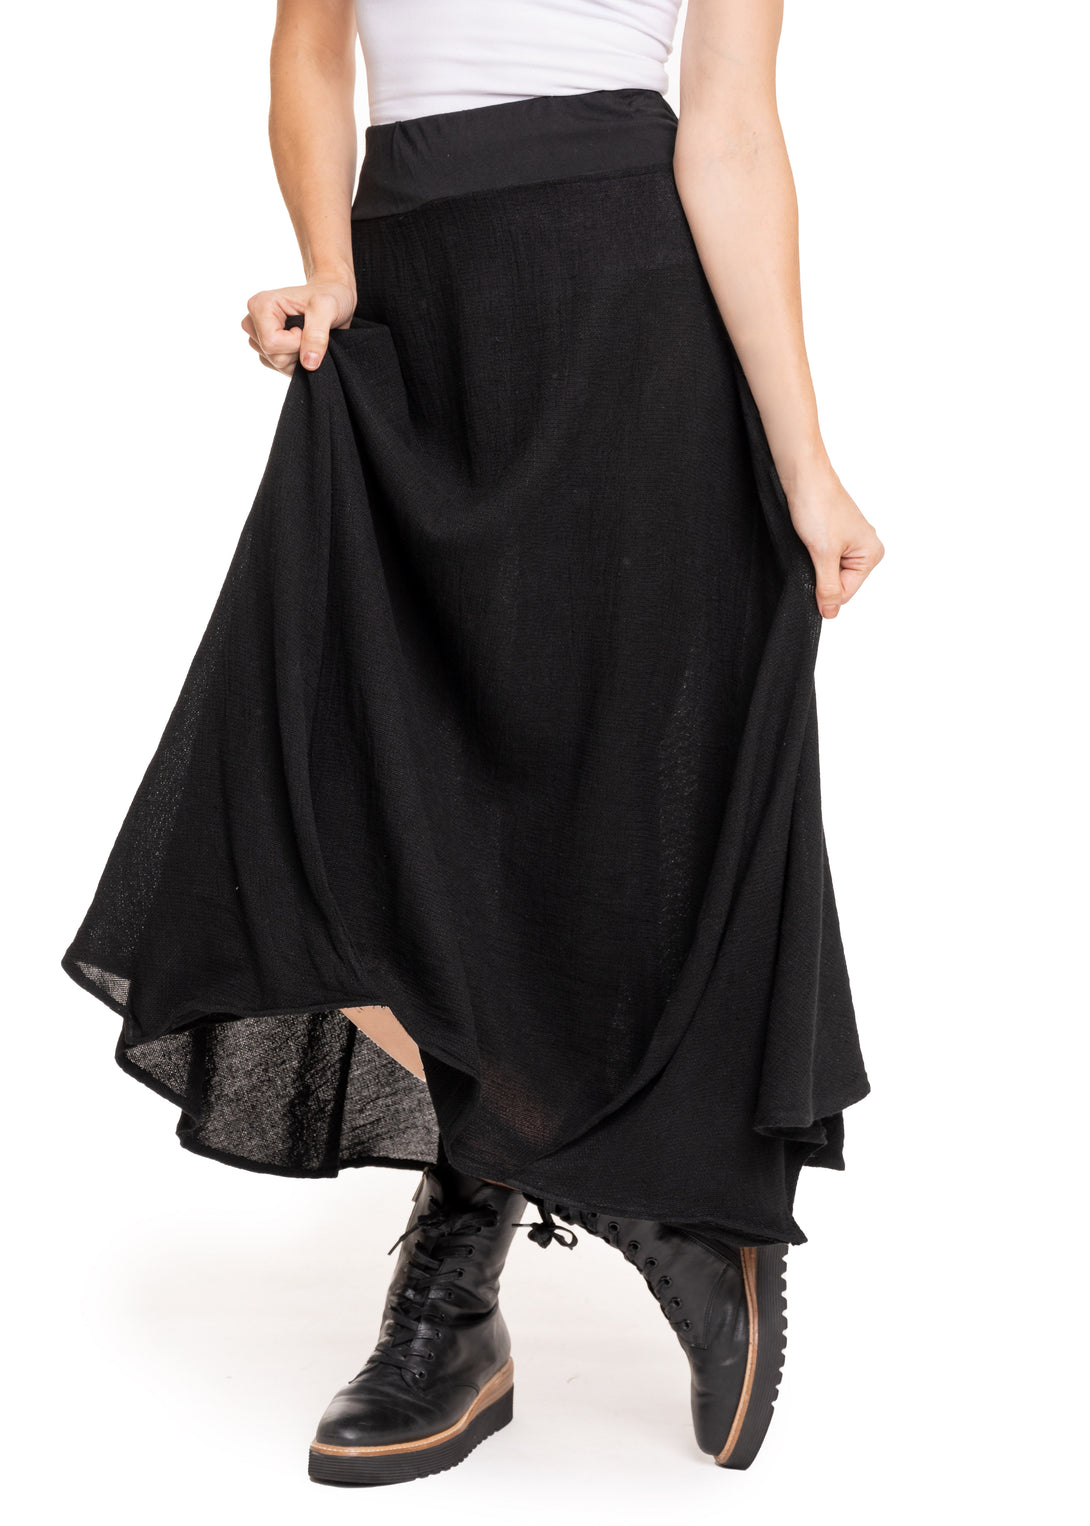 Kerrie Skirt in Onyx - Imagine Fashion